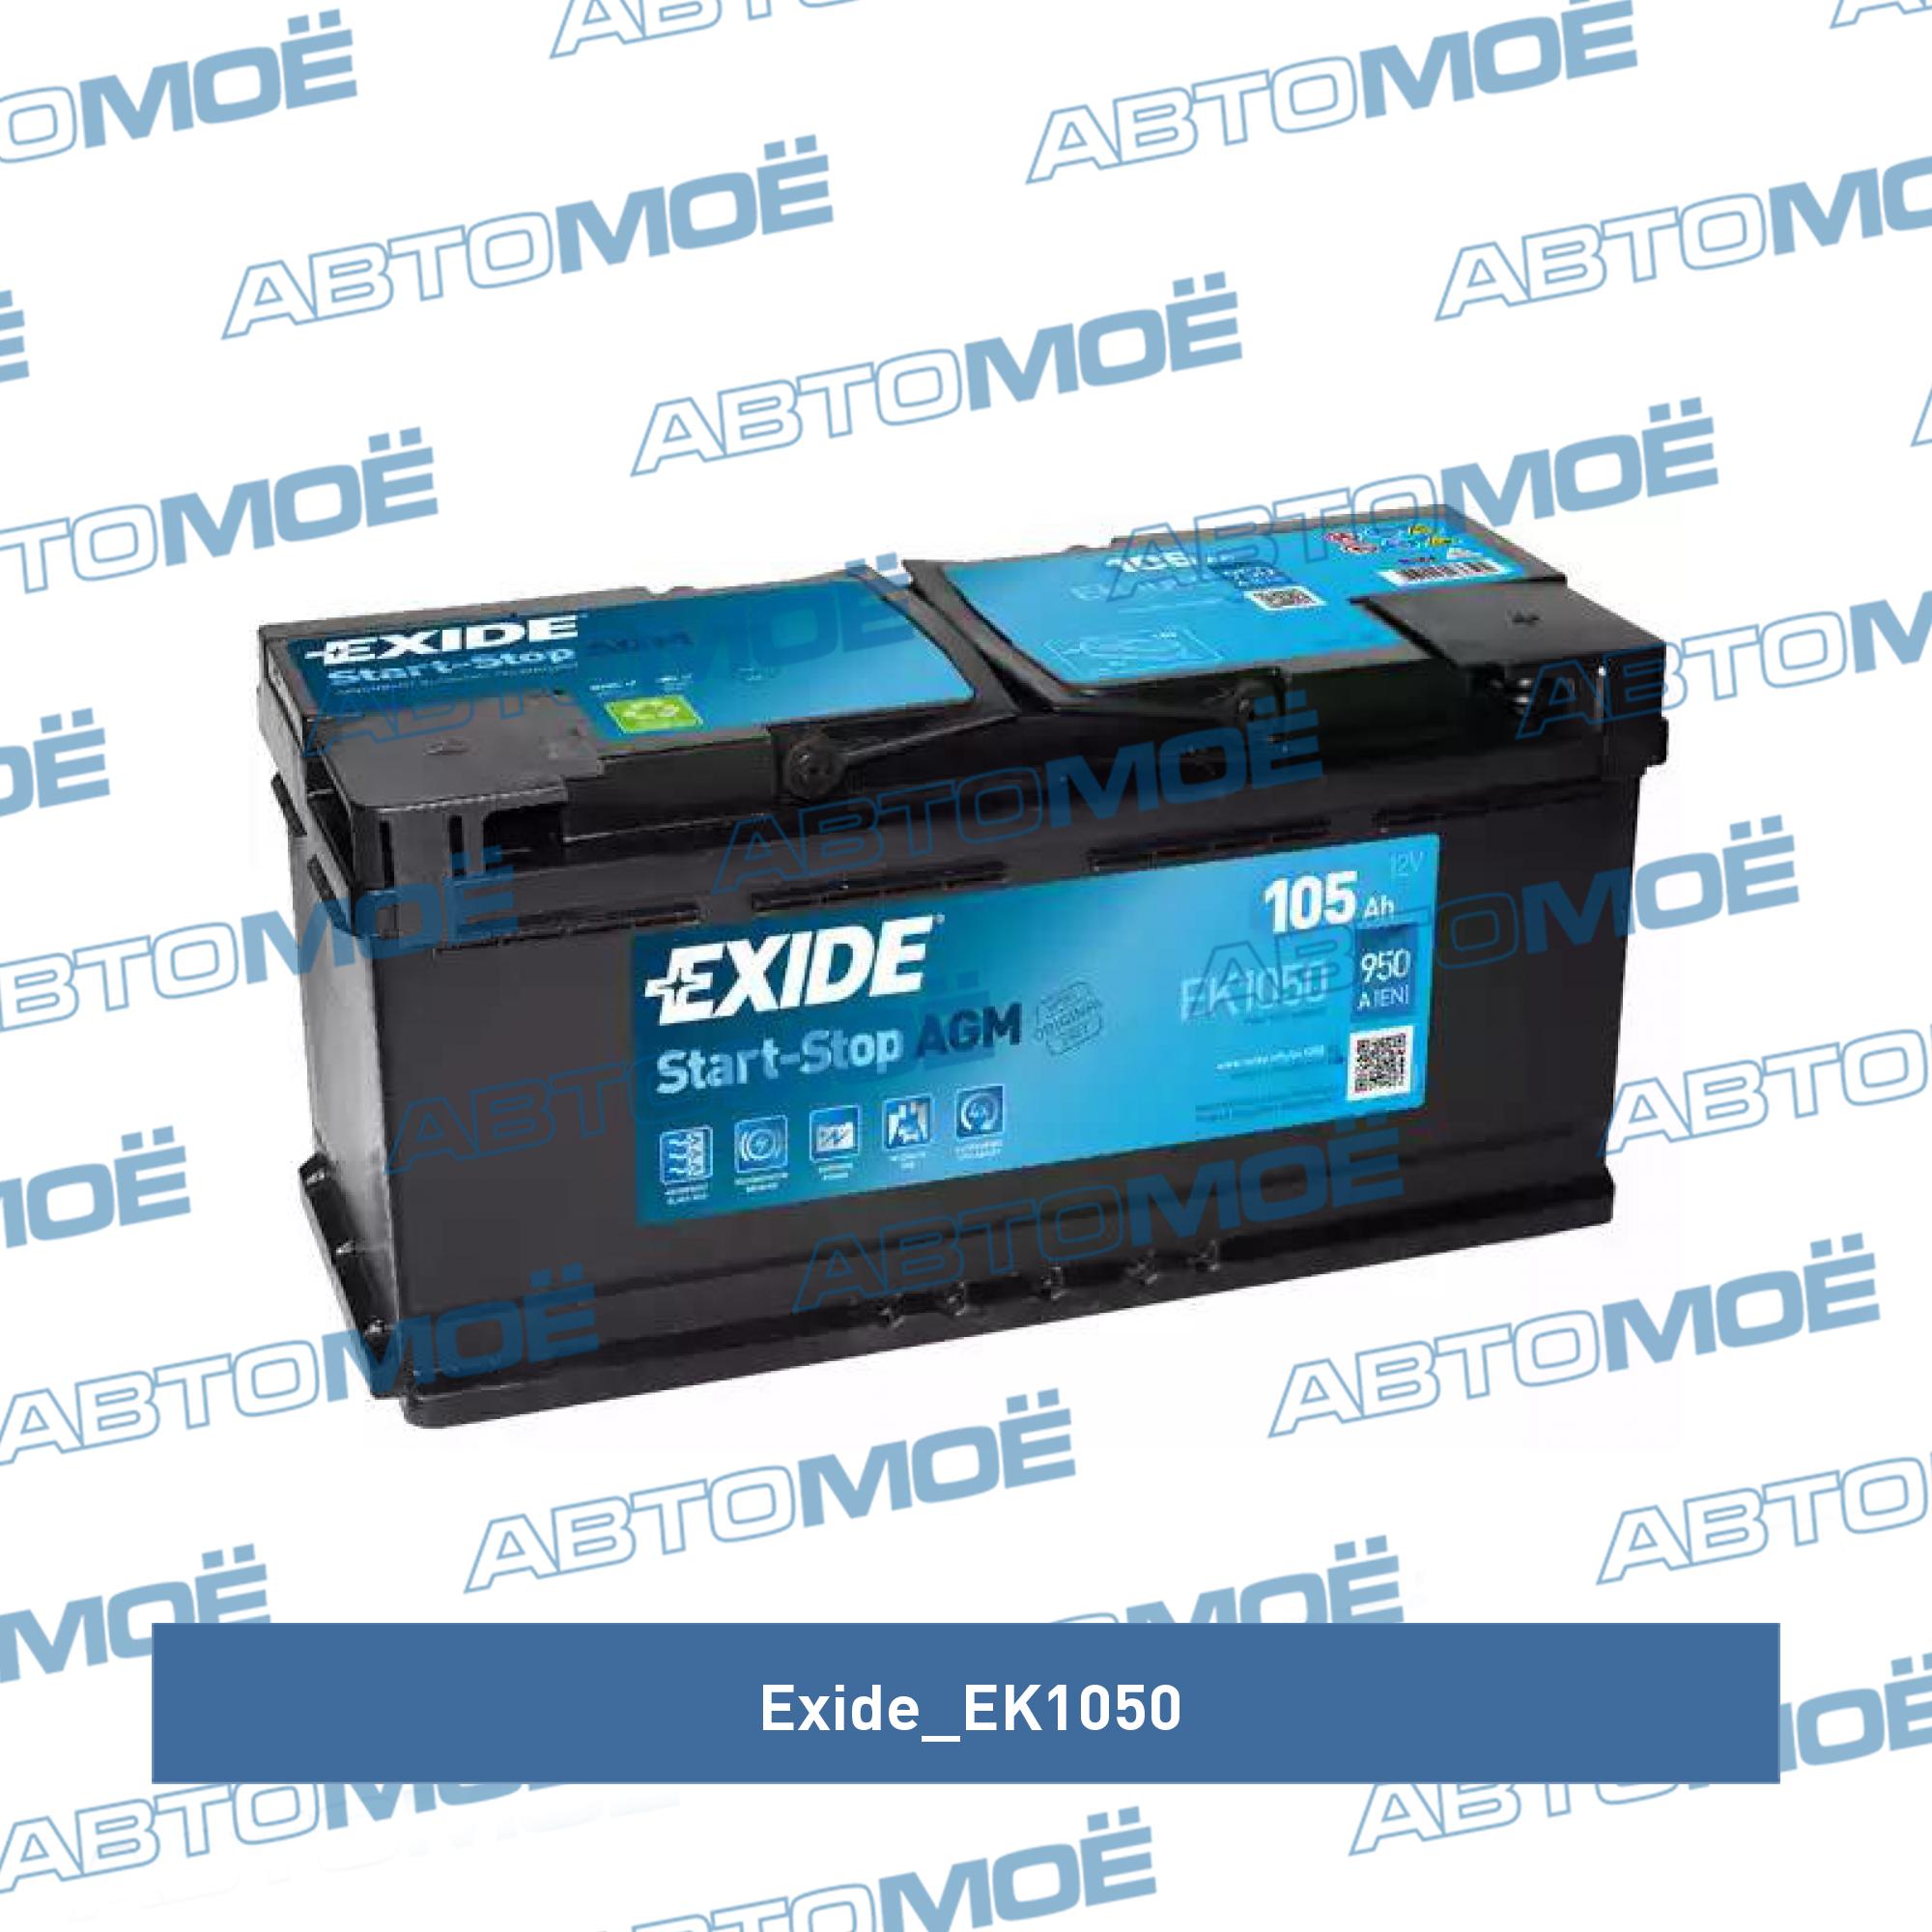 Аккумулятор автомобильный EXIDE Start-Stop AGM EK1050 (105R) 950 А обр. пол. 105 Ач EXIDE EK1050